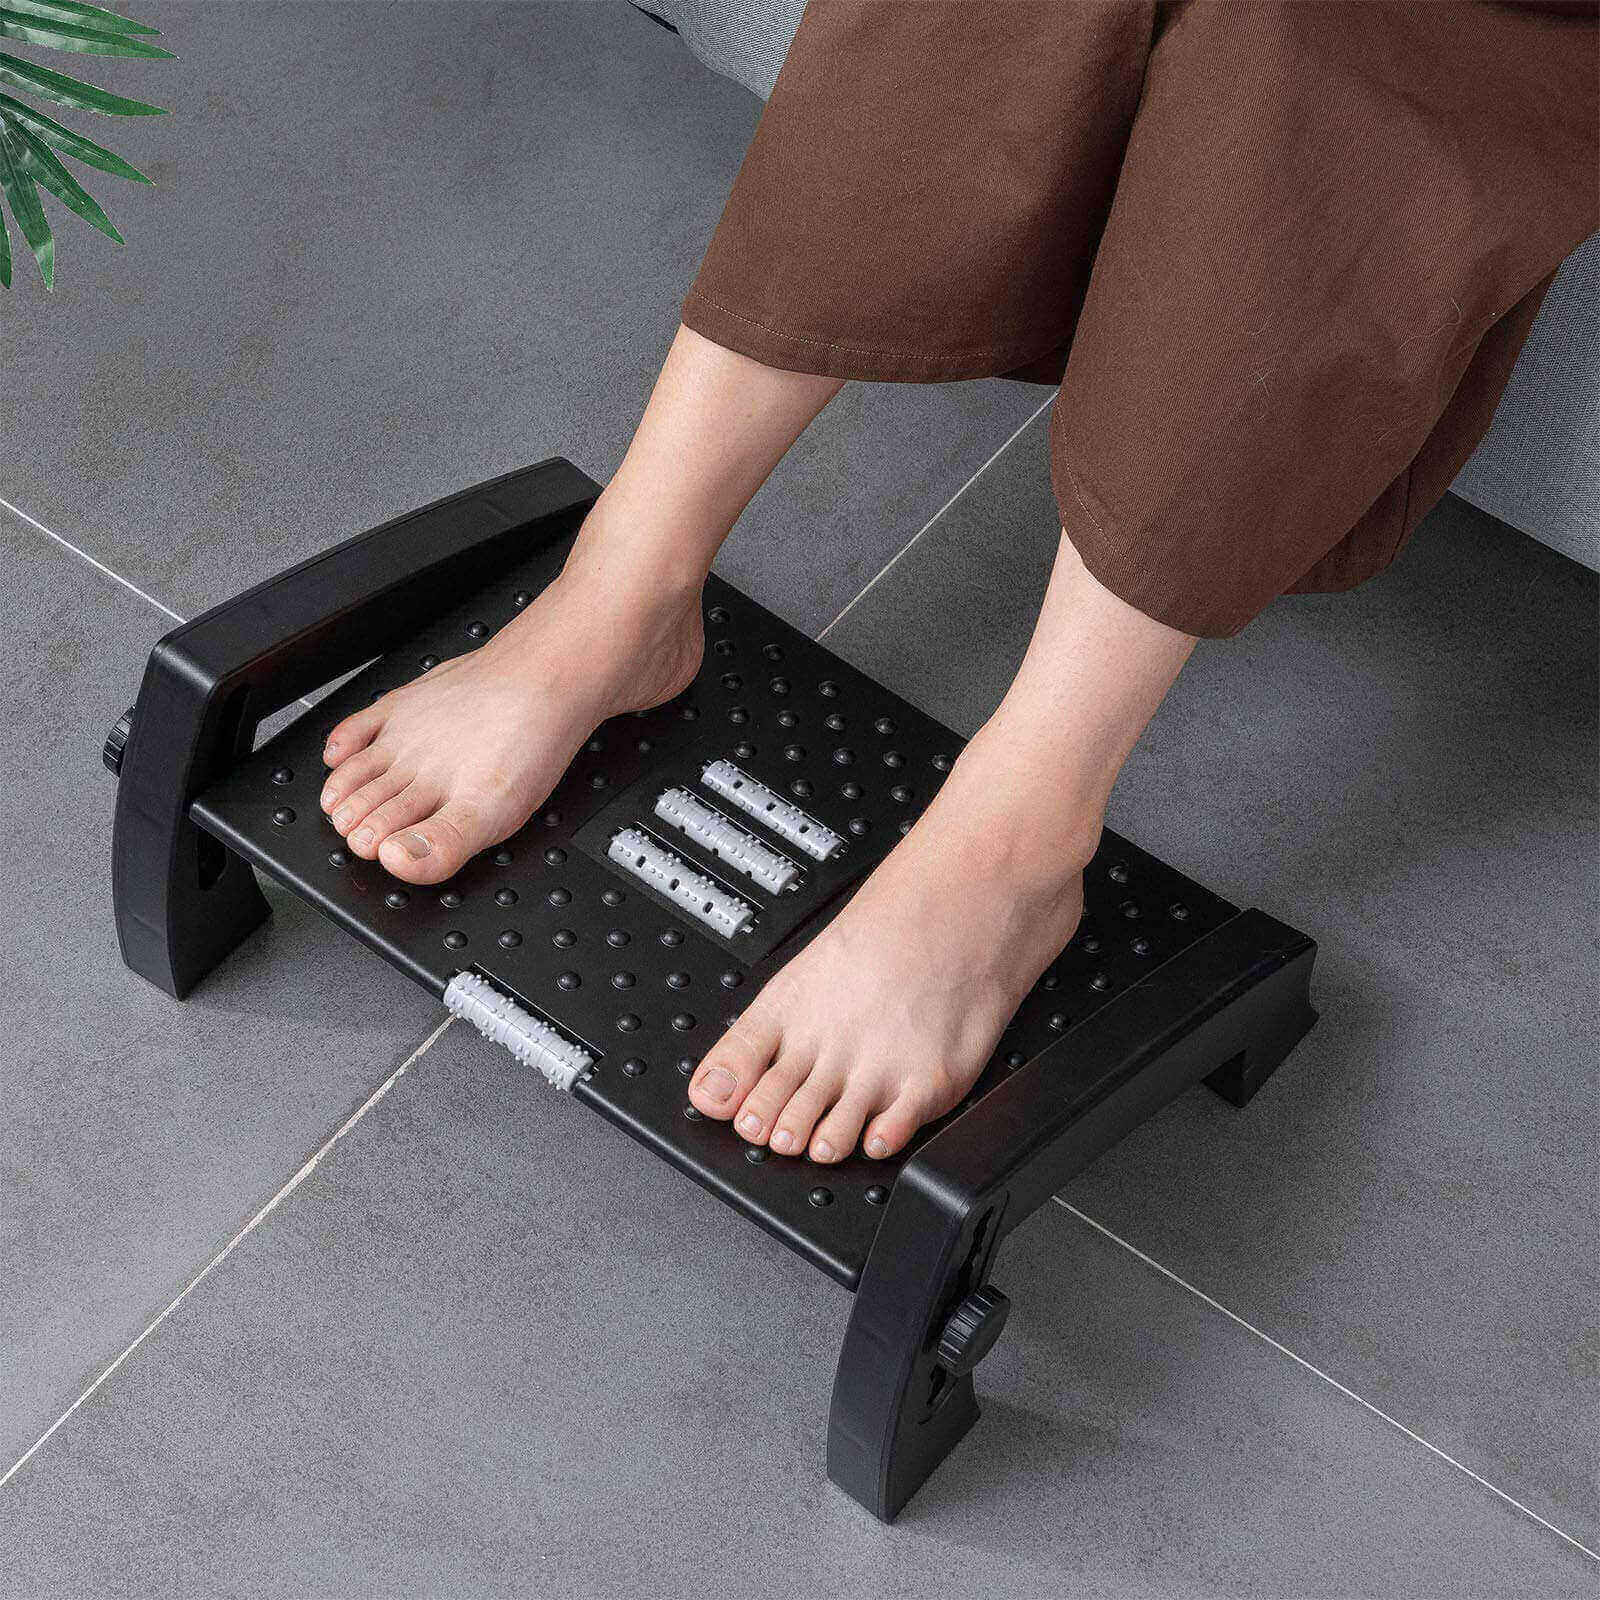 Fanwer Foot Rest Under Desk, Foot Rest Stool for Pedicure & Massage